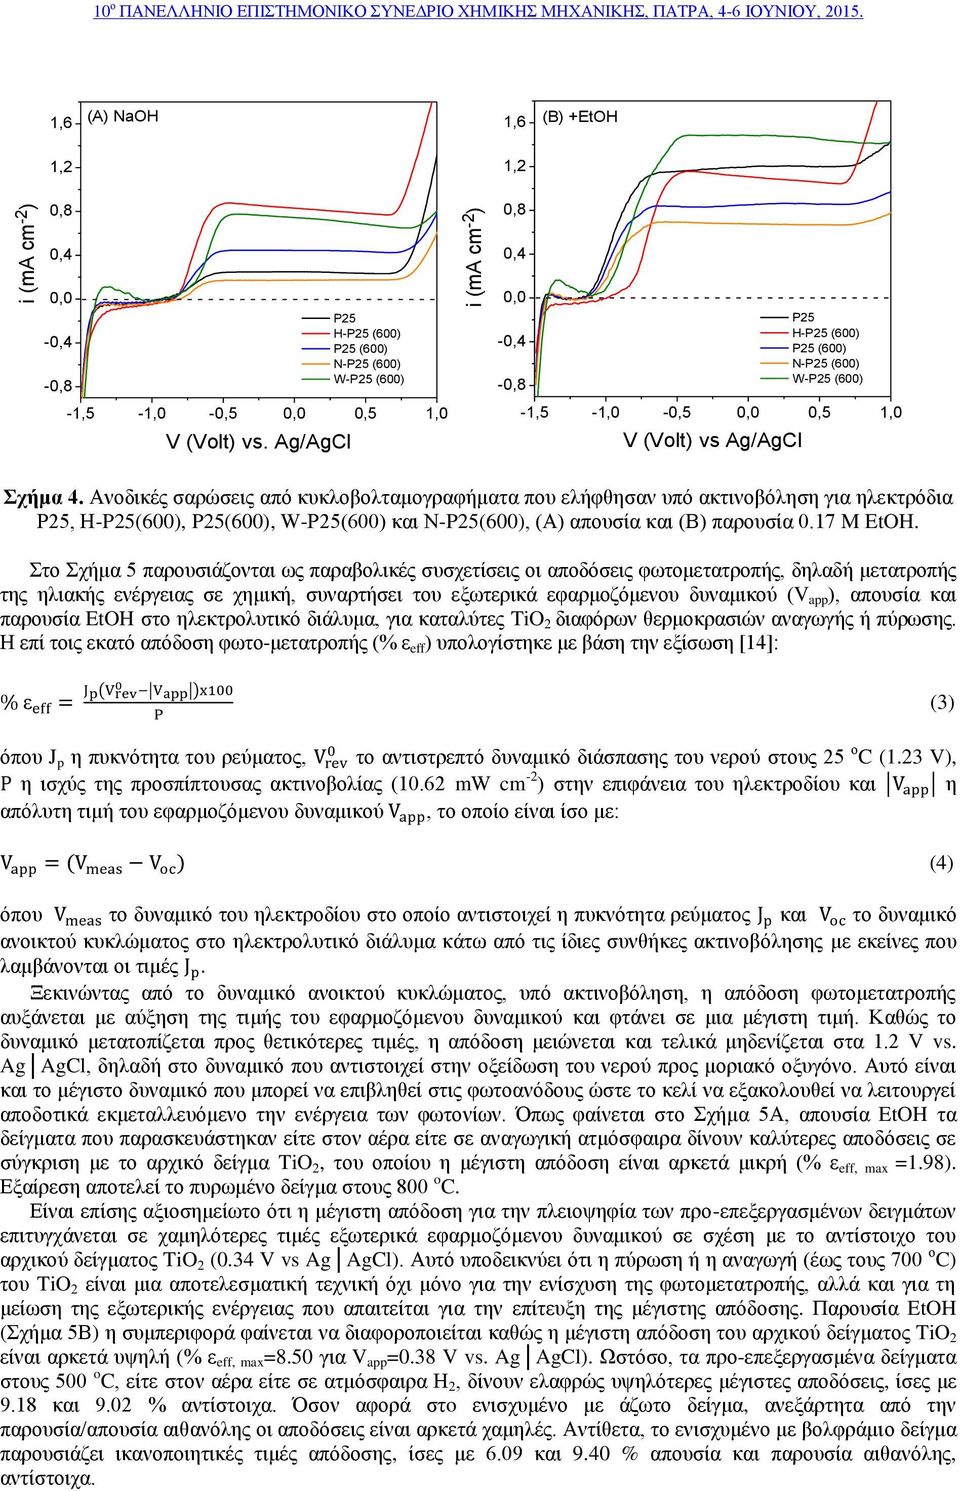 Ανοδικές σαρώσεις από κυκλοβολταμογραφήματα που ελήφθησαν υπό ακτινοβόληση για ηλεκτρόδια, Η-(600), (600), W-(600) και Ν-(600), (Α) απουσία και (Β) παρουσία 0.17 M EtOH.